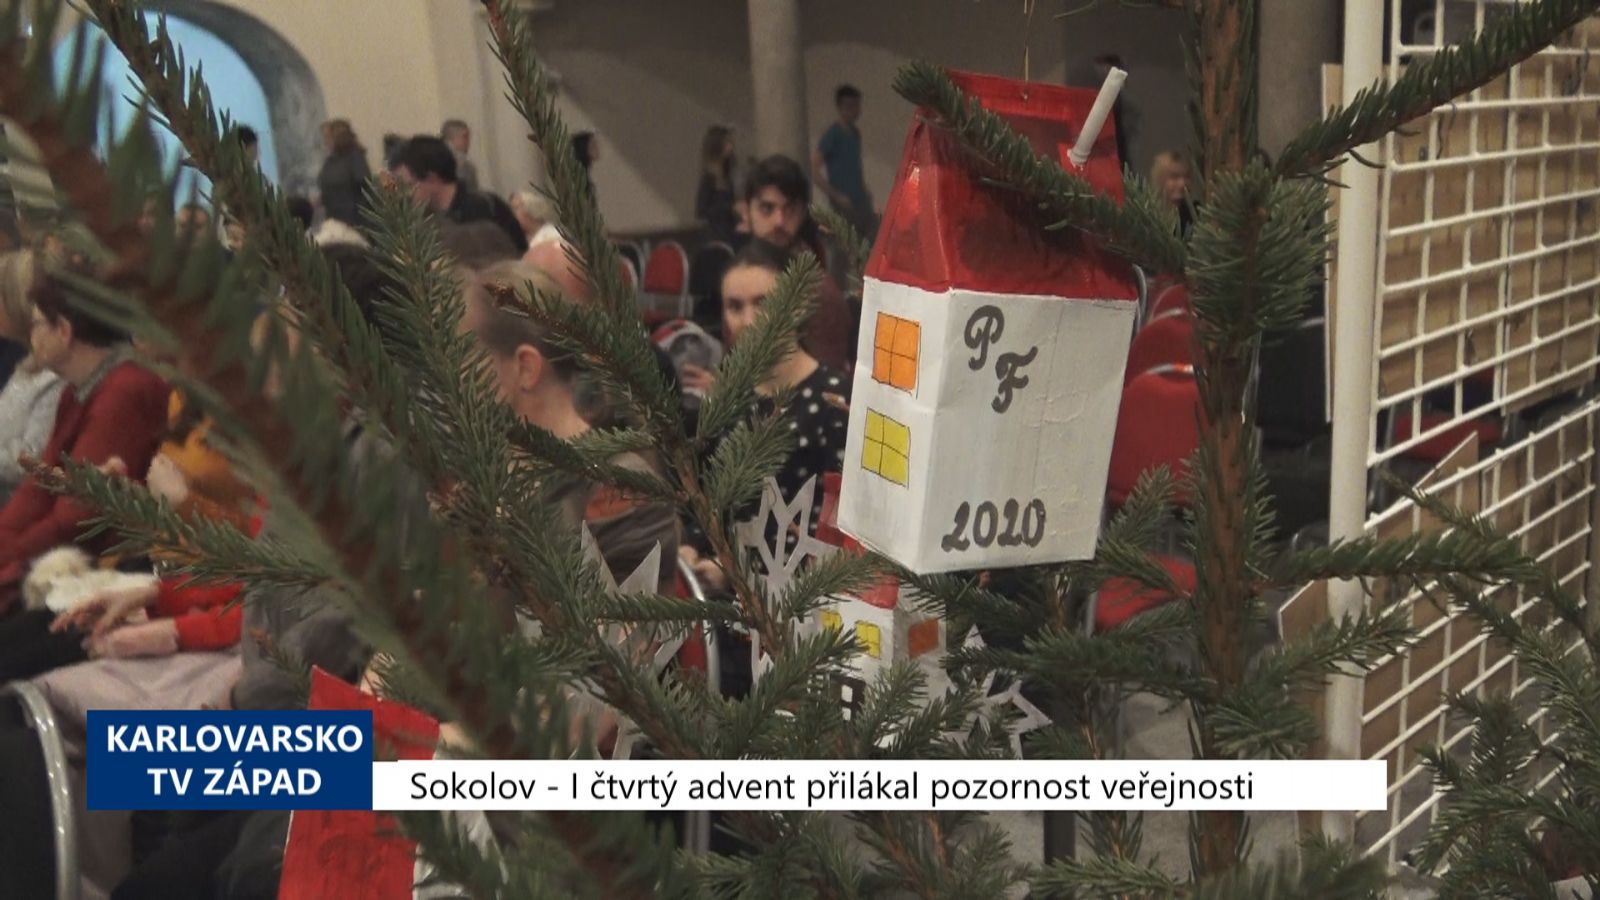 Sokolov: I čtvrtý advent přilákal pozornost veřejnosti (TV Západ)	